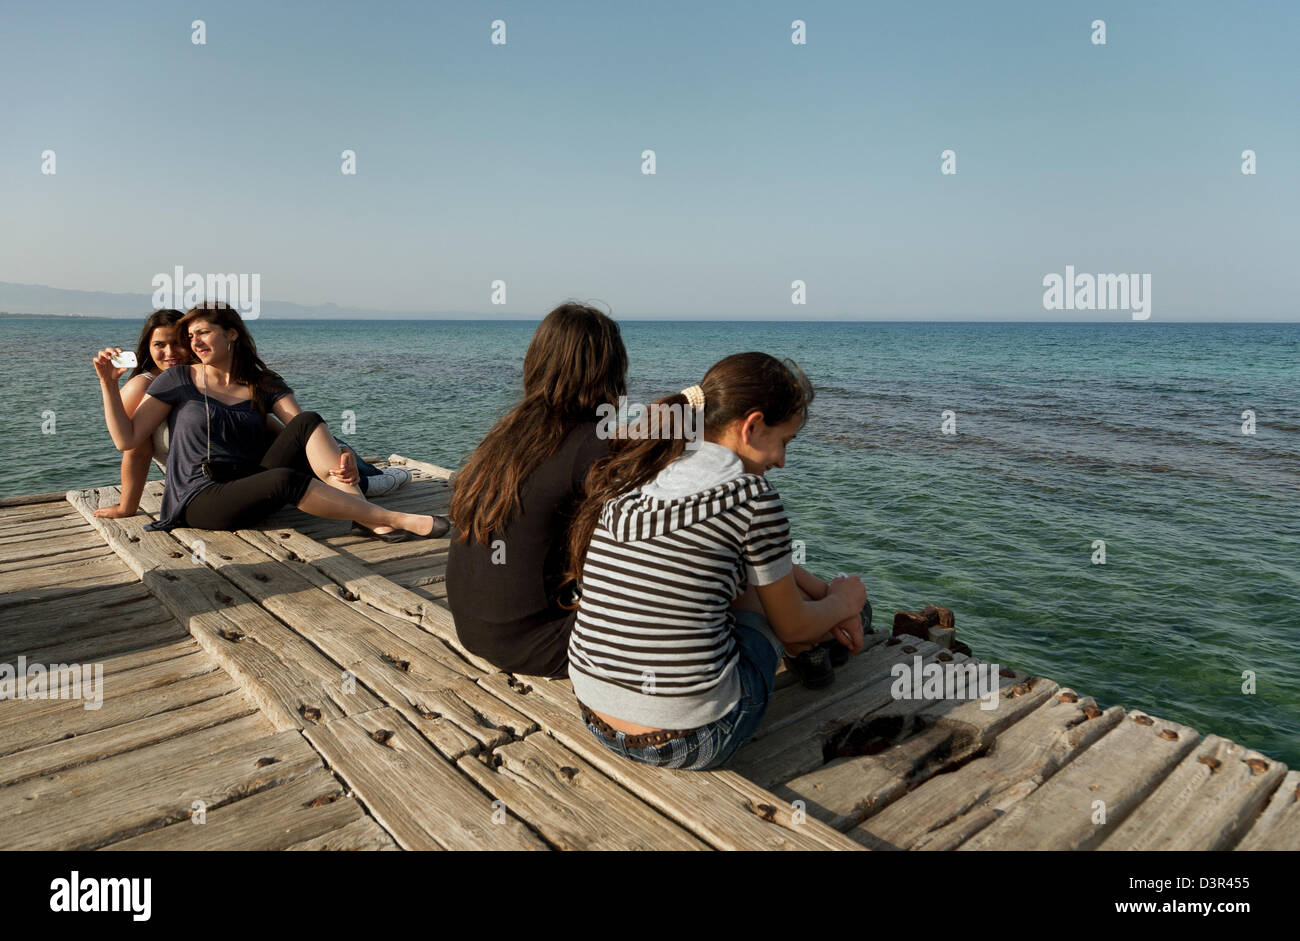 Famagusta, türkischen Republik Nordzypern, Mädchen sitzen auf einem Dock im Mittelmeer Stockfoto